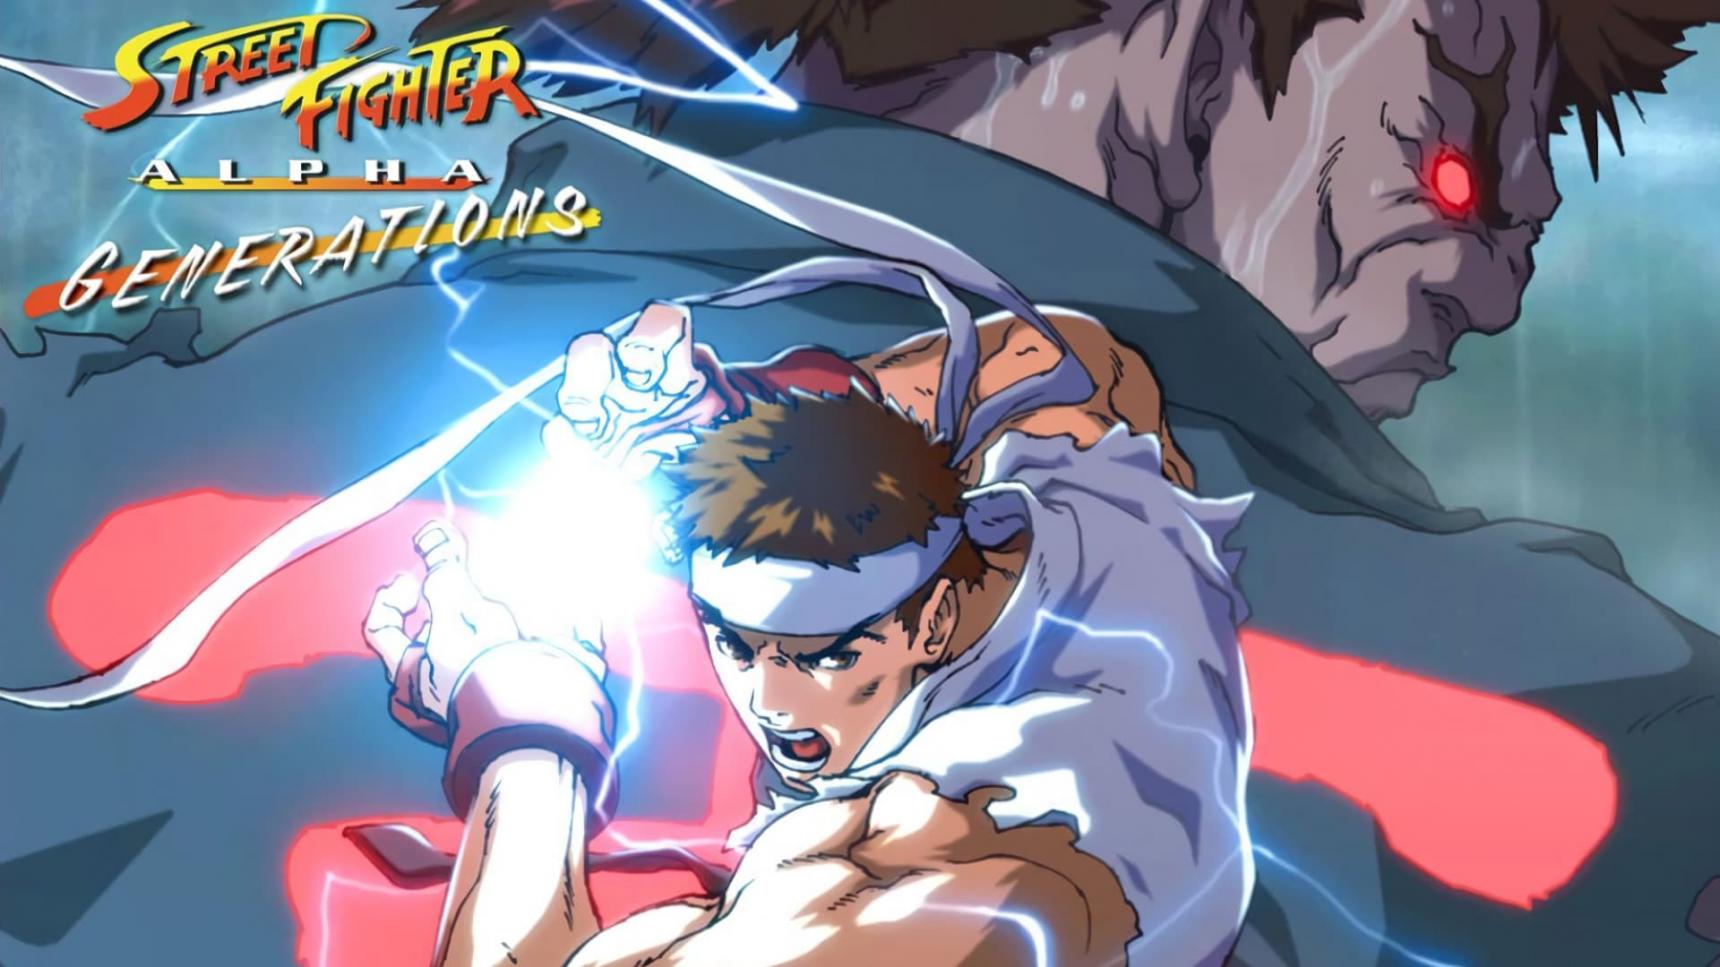 Fondo de pantalla de la película Street Fighter Alpha: Generations en Cliver.tv gratis